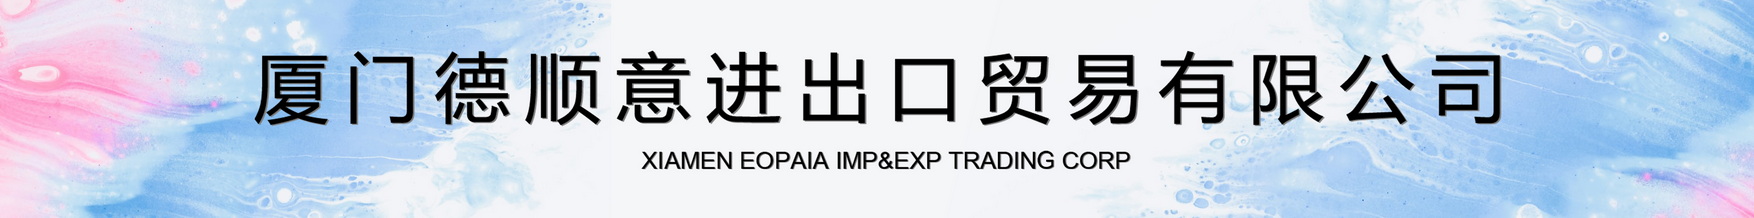 เซียะเหมิ eopaia Imp & Exp Trading Corp